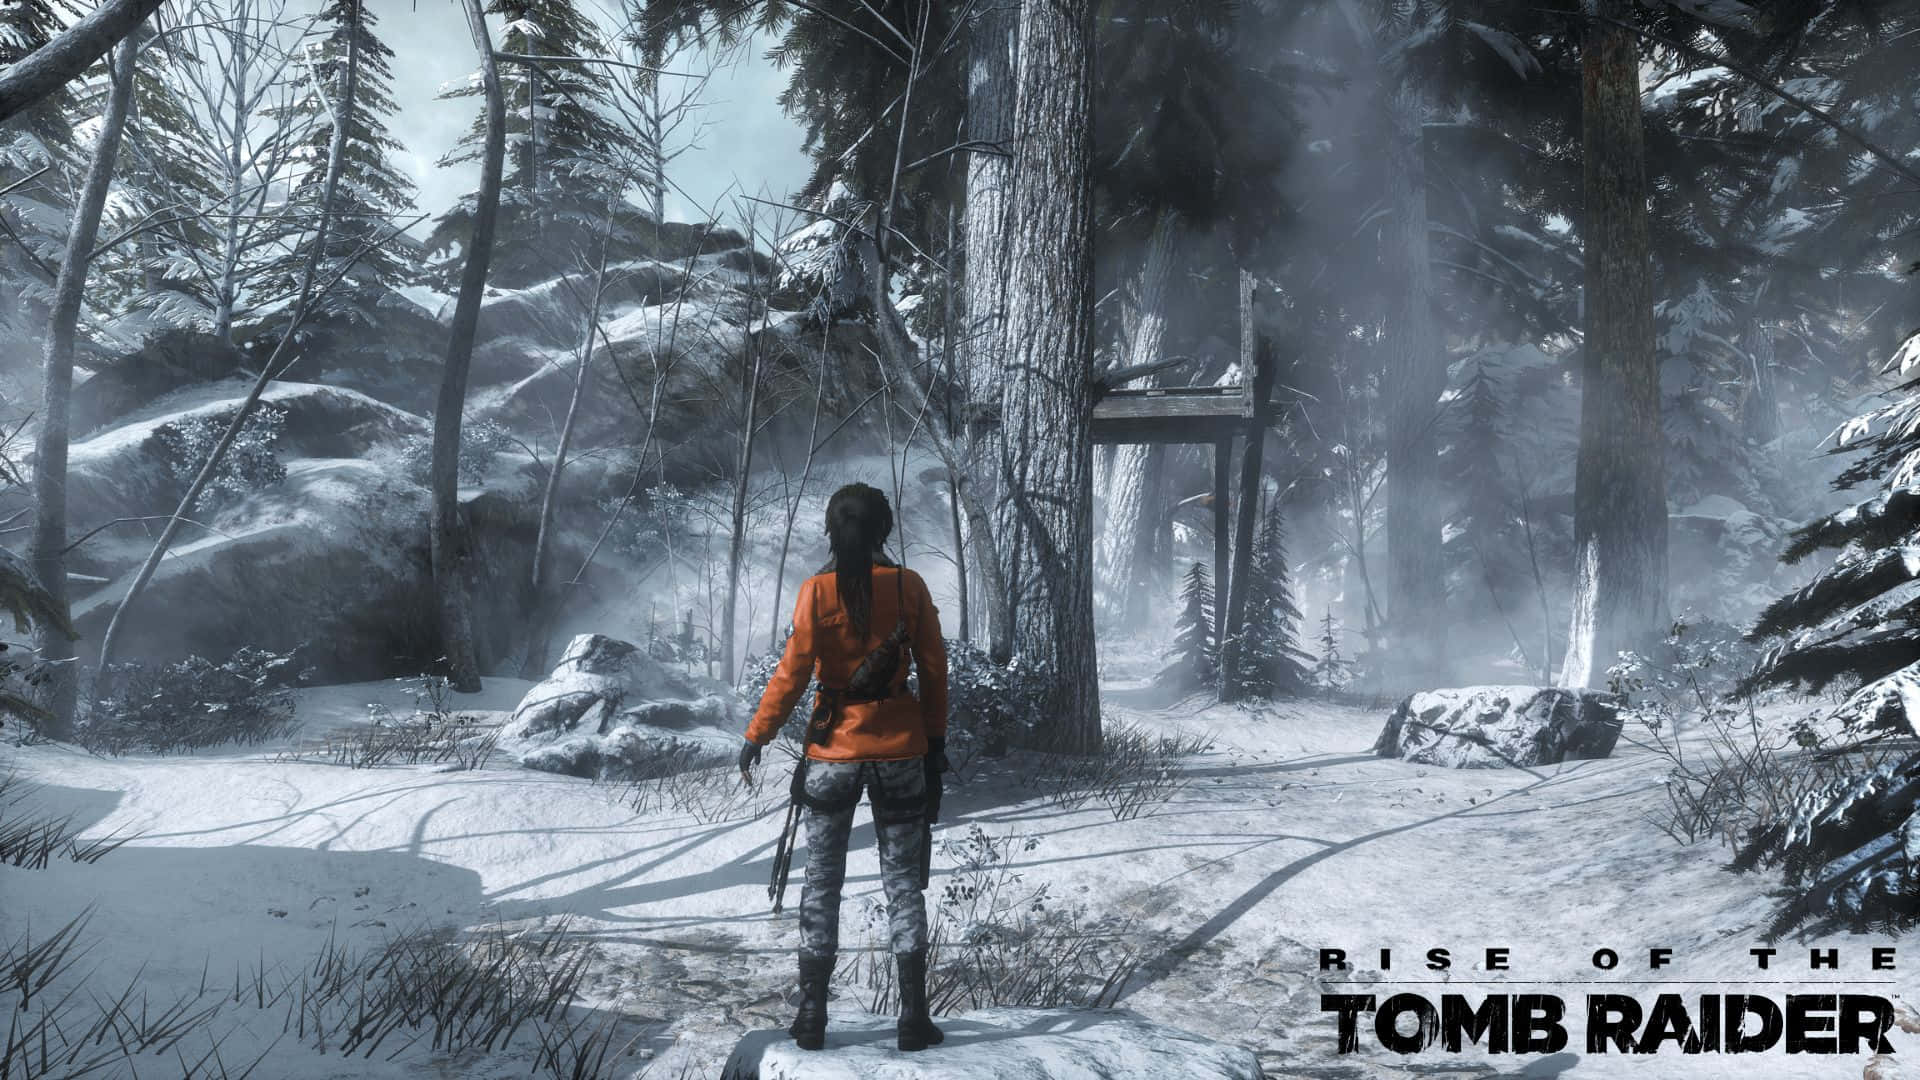 1080pbakgrundsbild Till Rise Of The Tomb Raider Med En Snöig Skogsmiljö.